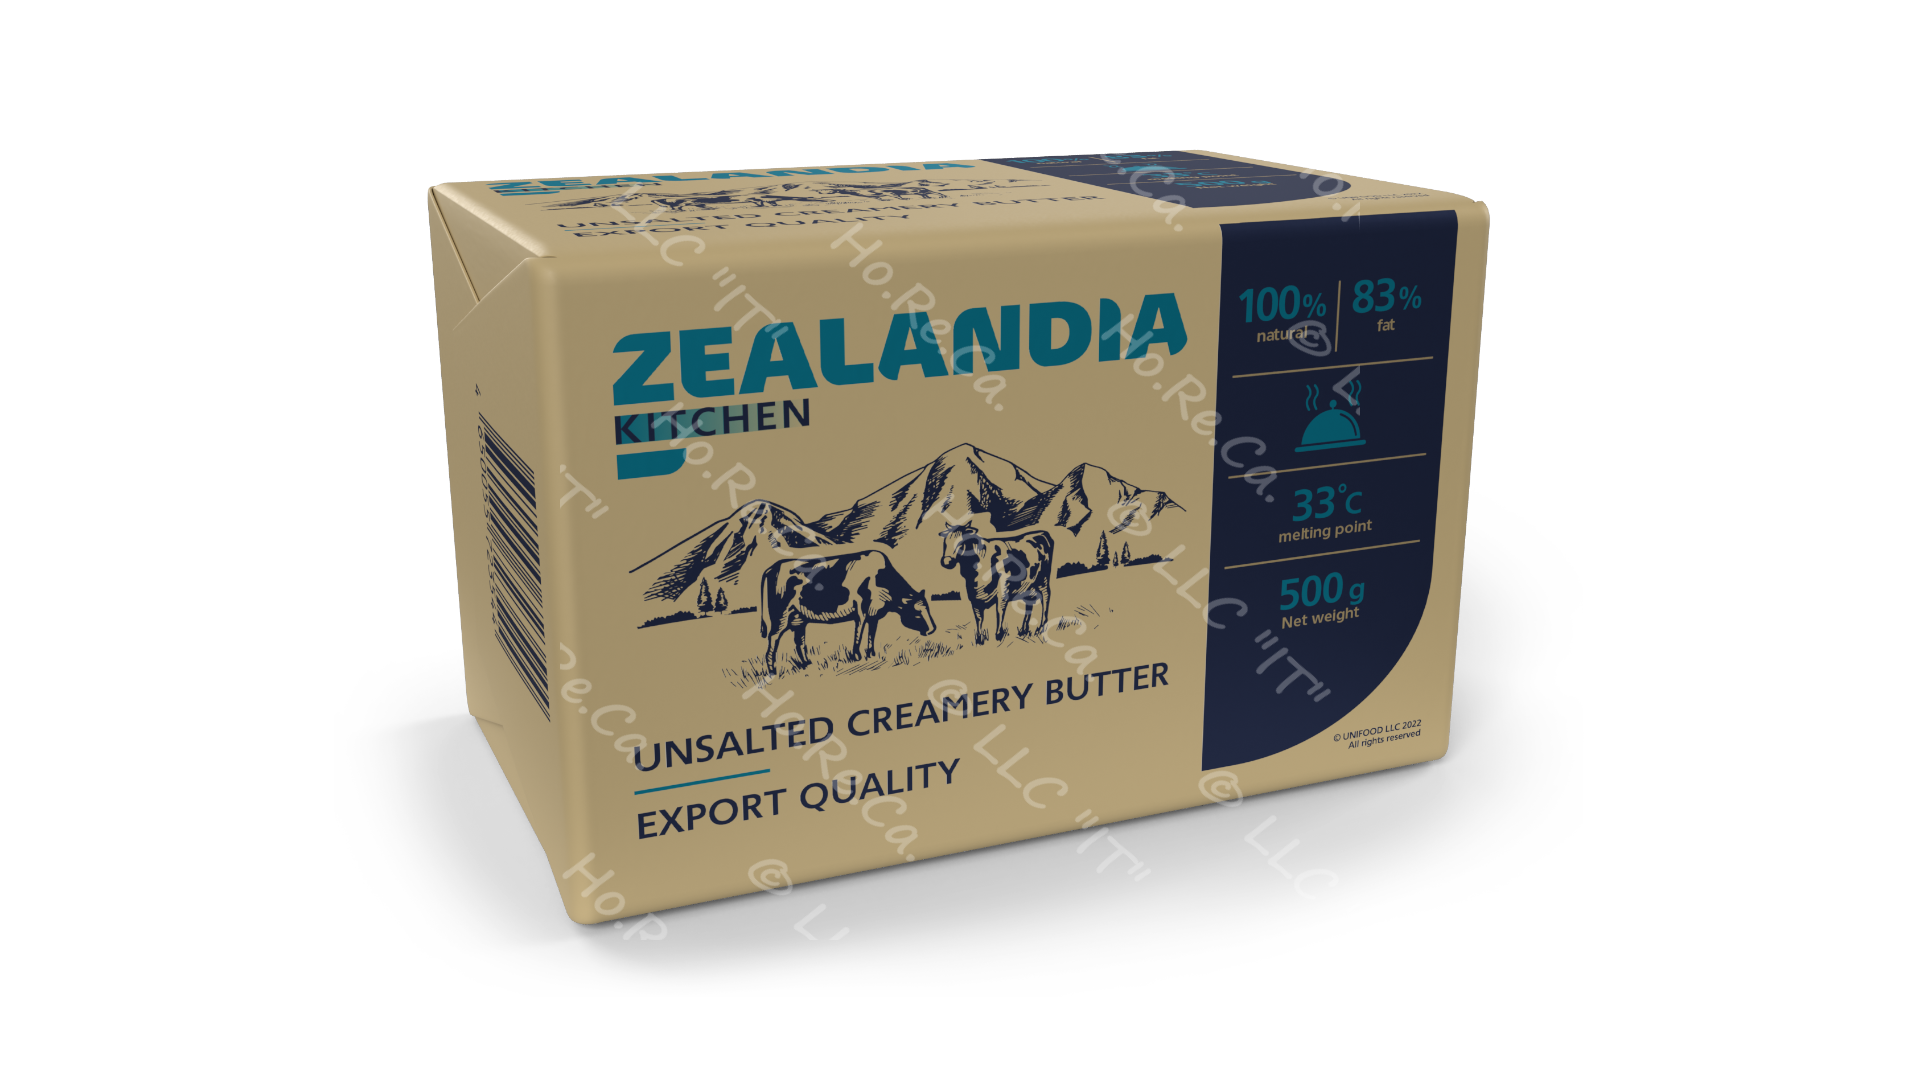 Масло пачка 500 г 83 % Зеландия Китчен / Zealandia Kitchen